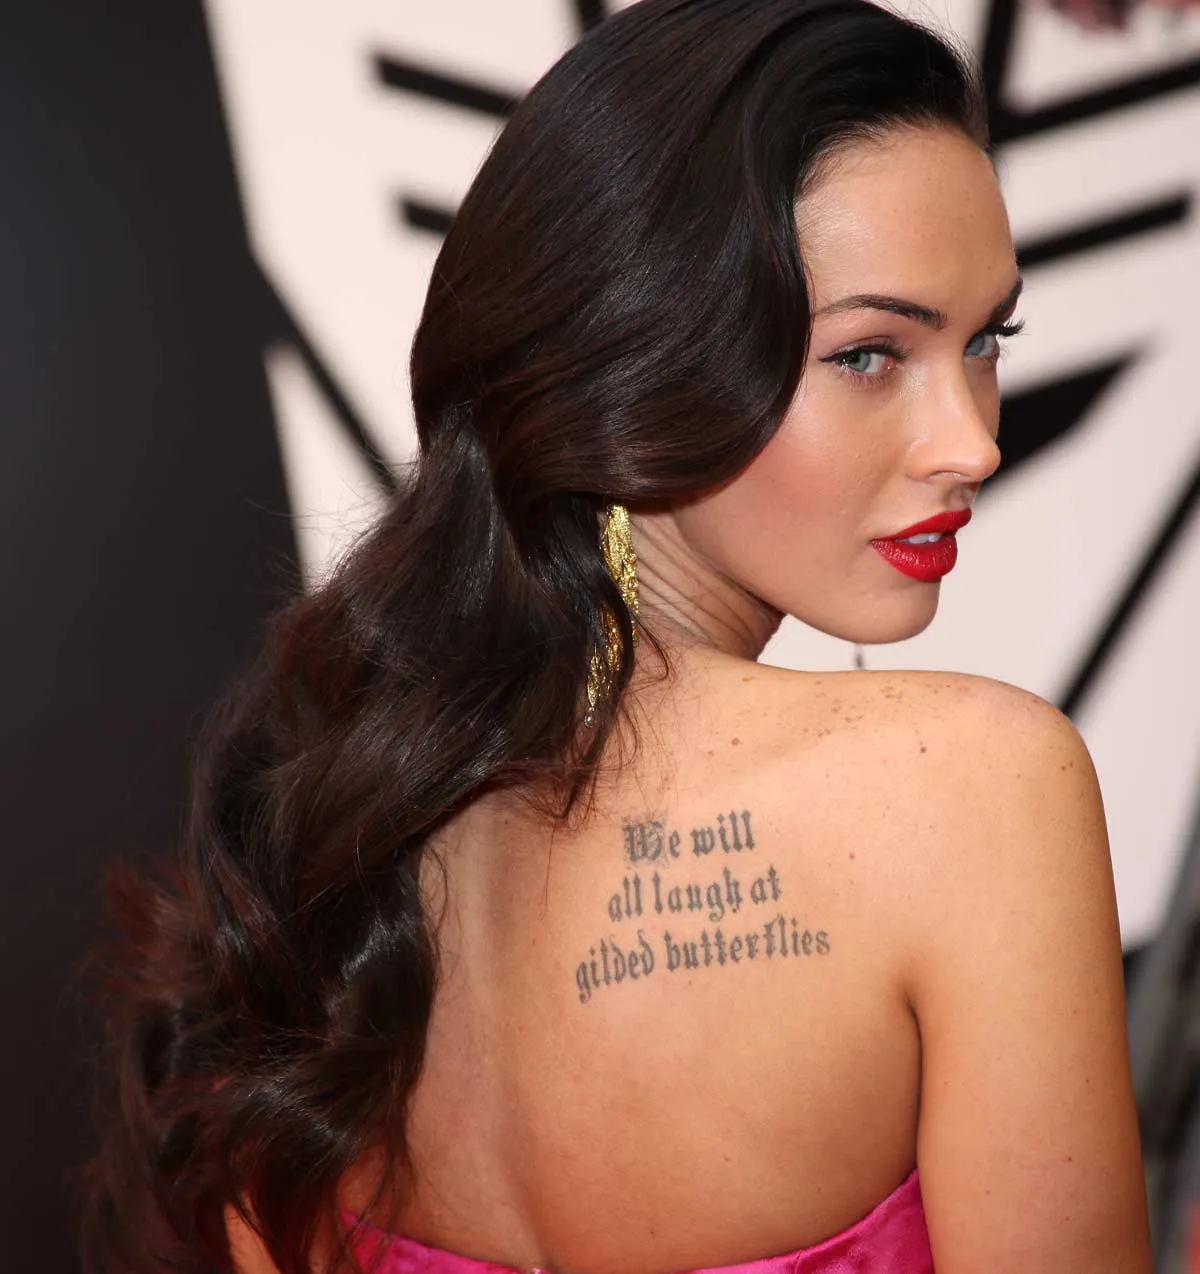 В сети высмеяли шокирующую татуировку жениха Меган Фокс